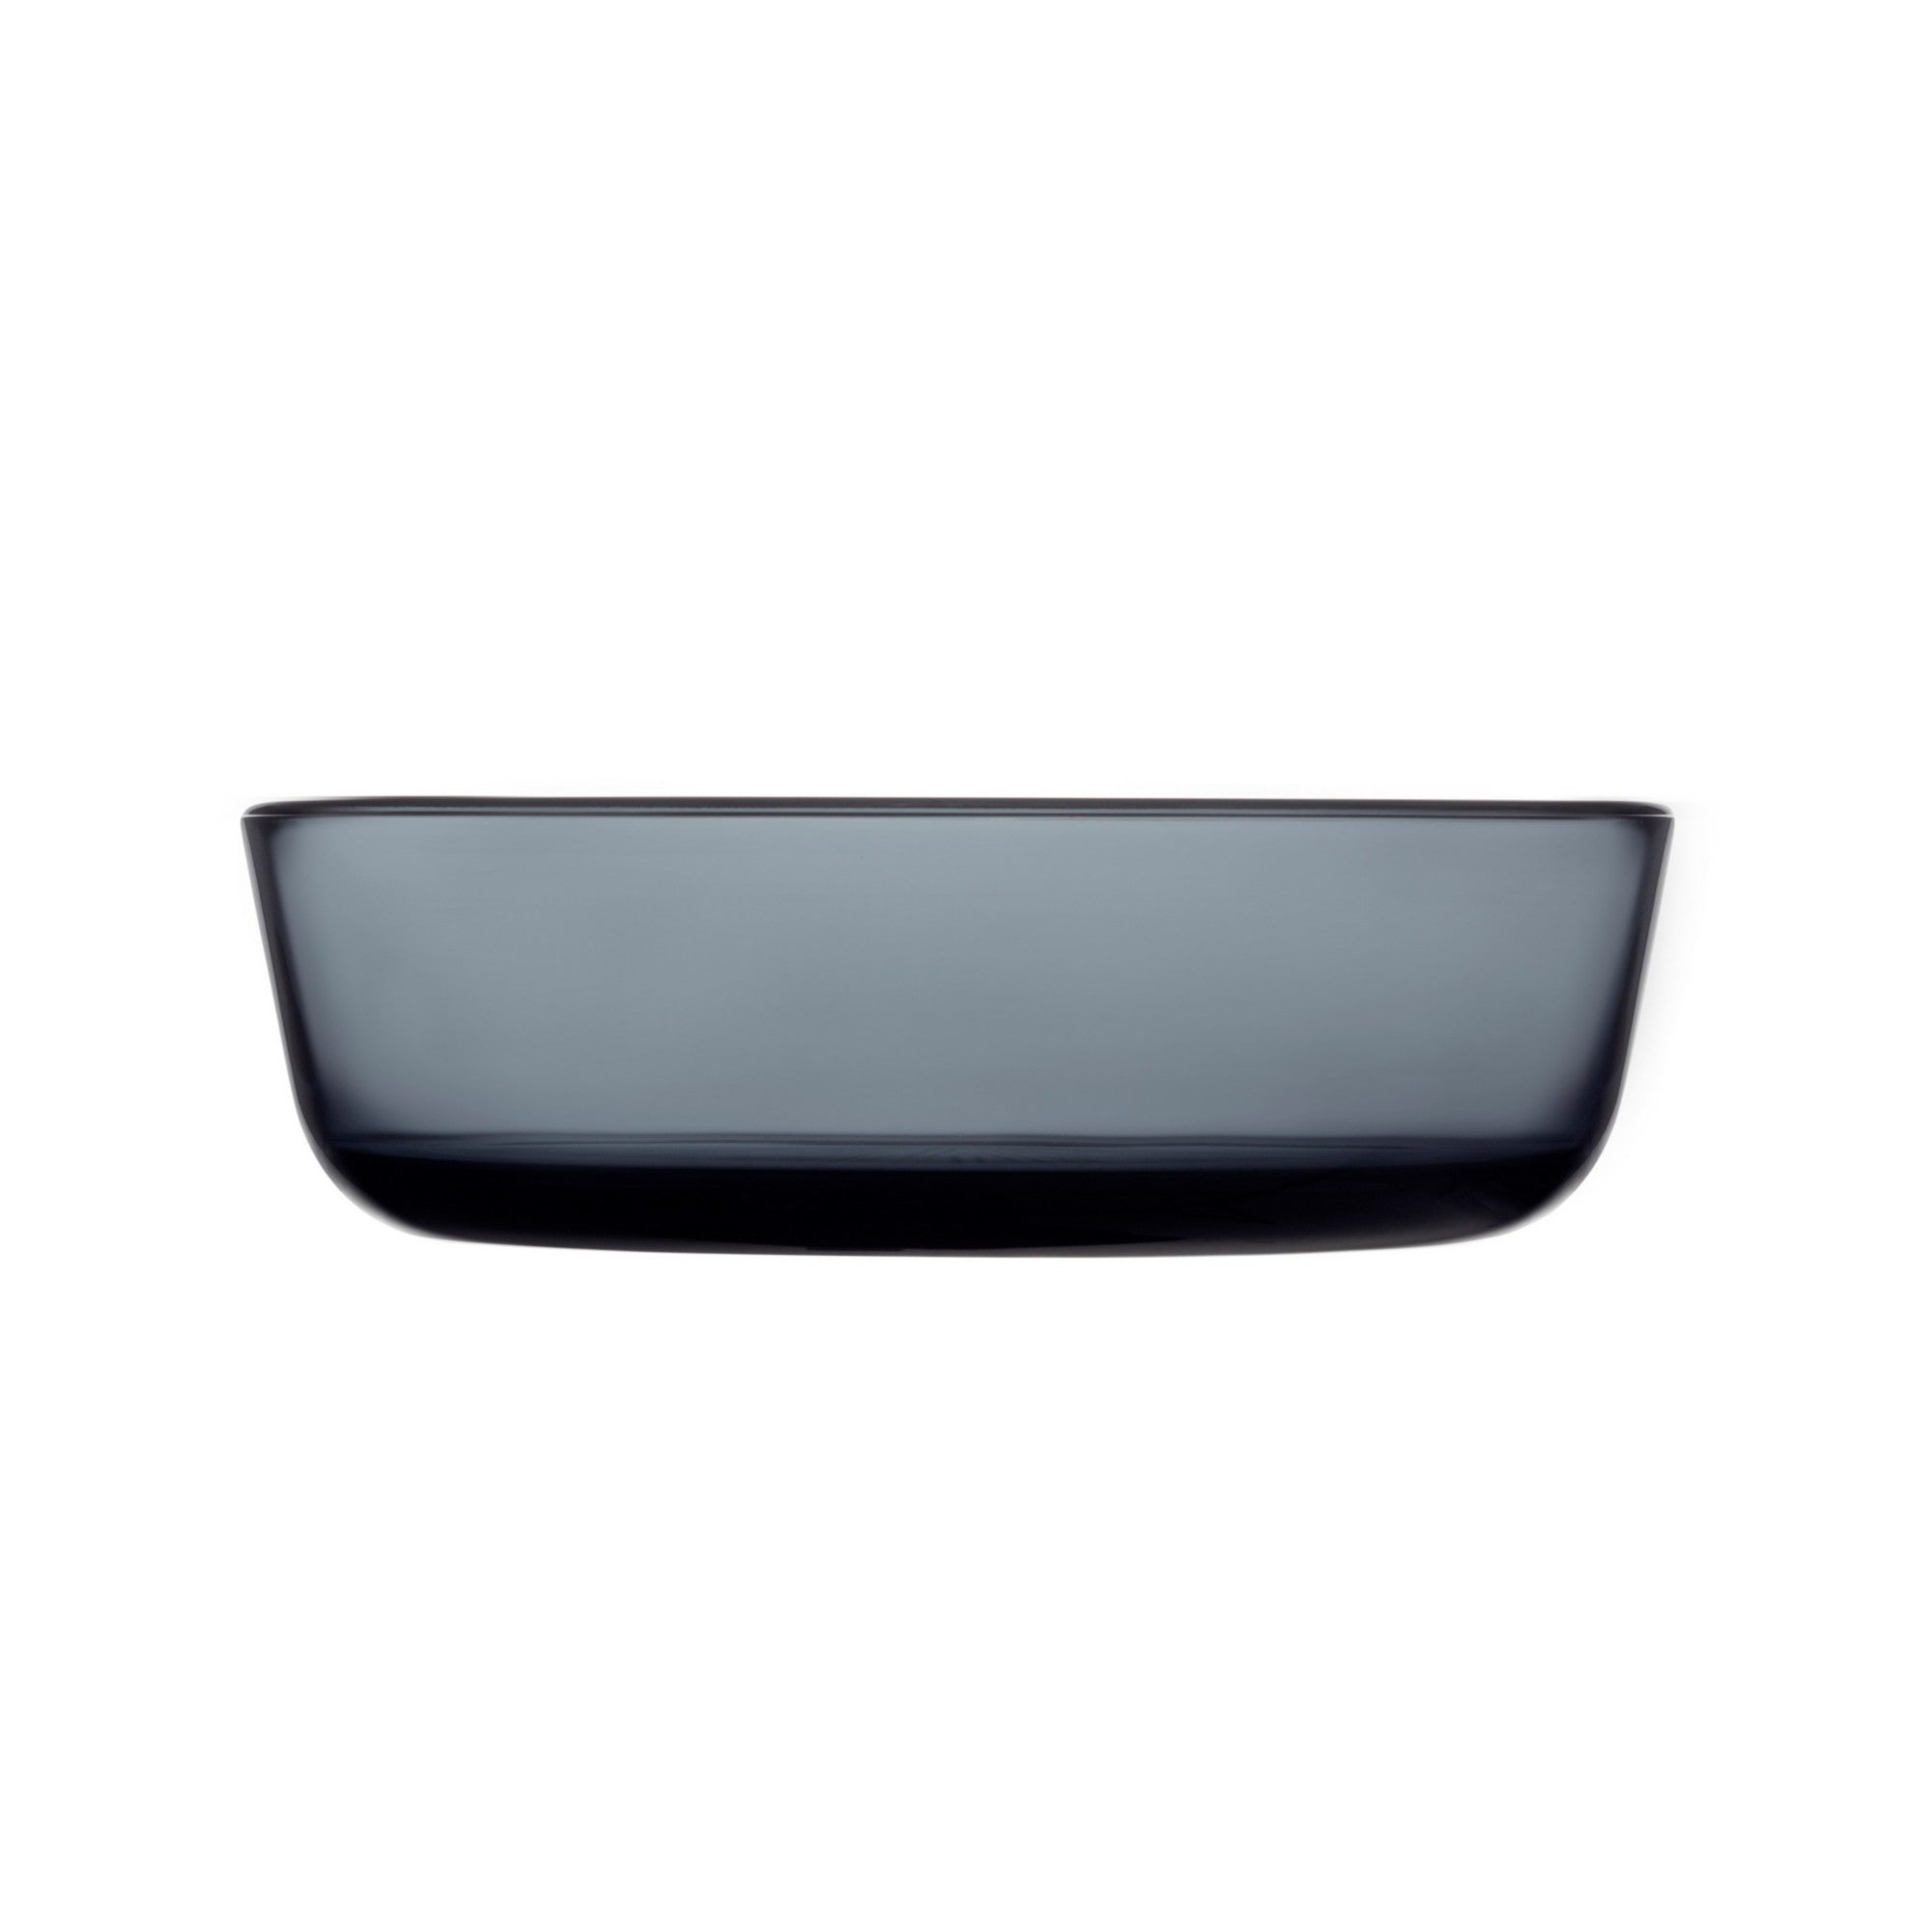 Essence bowl 69 cl dark grey / 23 oz